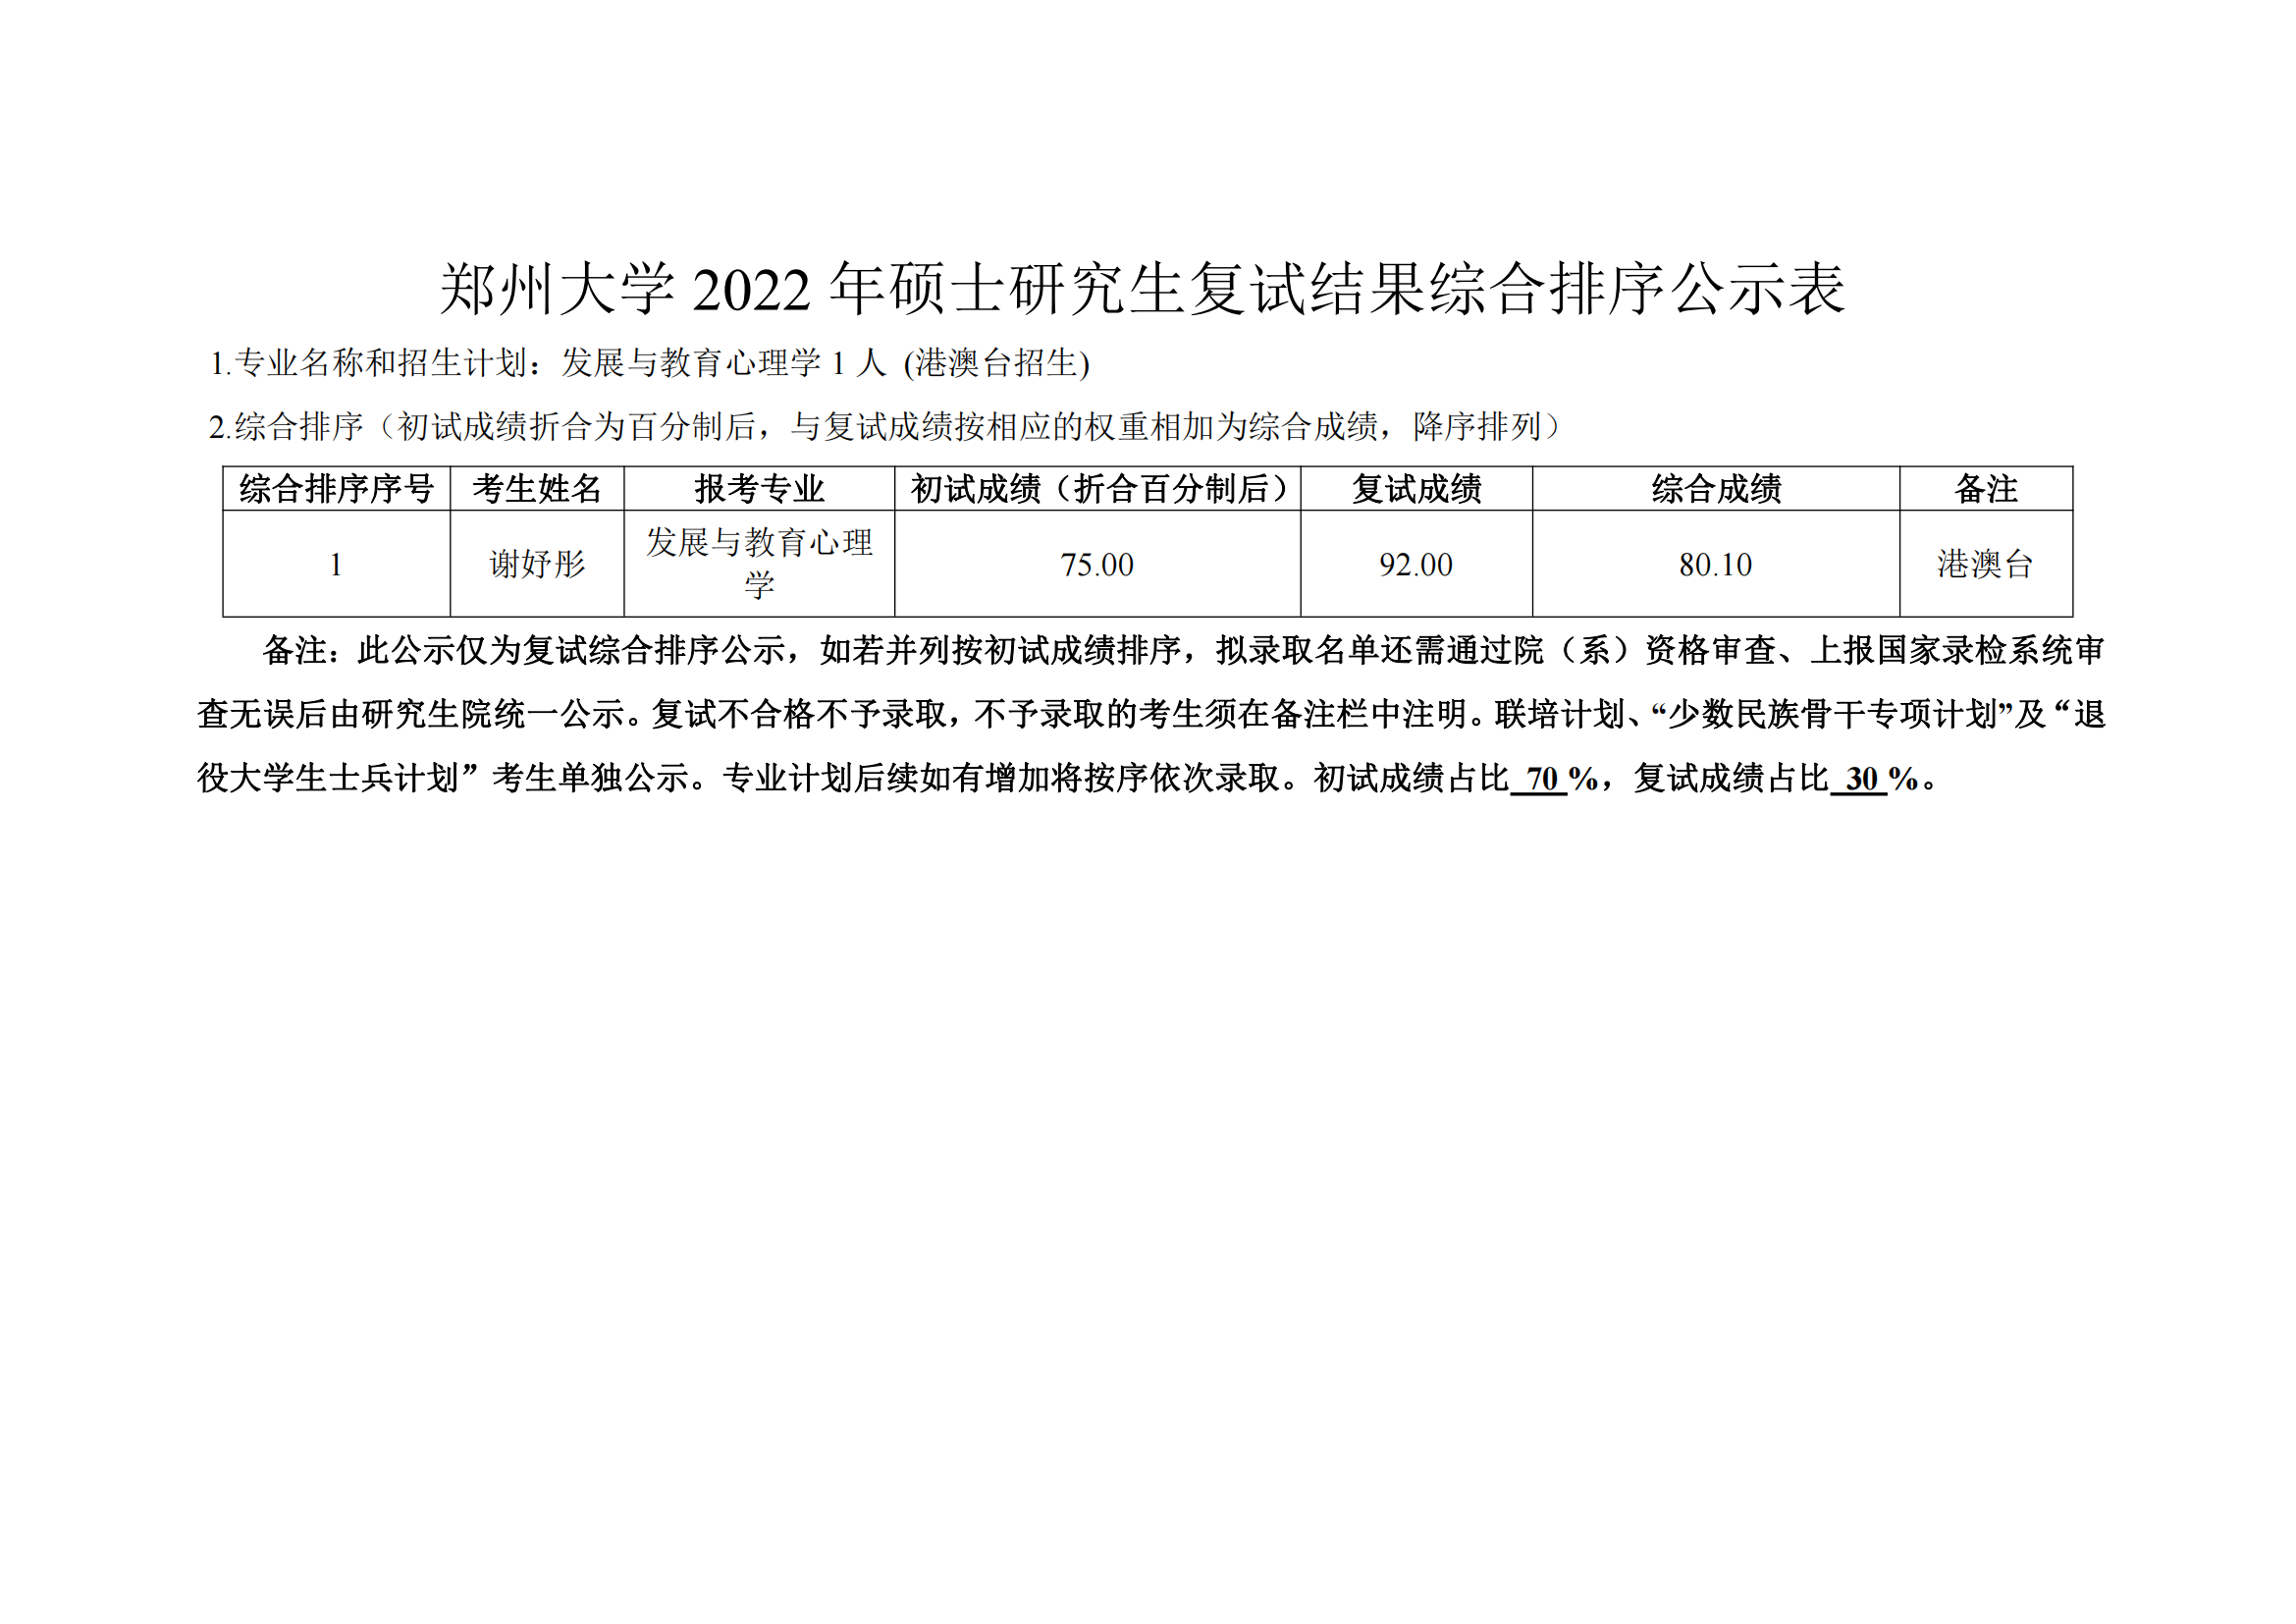 郑州大学2022年硕士研究生复试结果综合排序公示表 港澳台招生_00.png